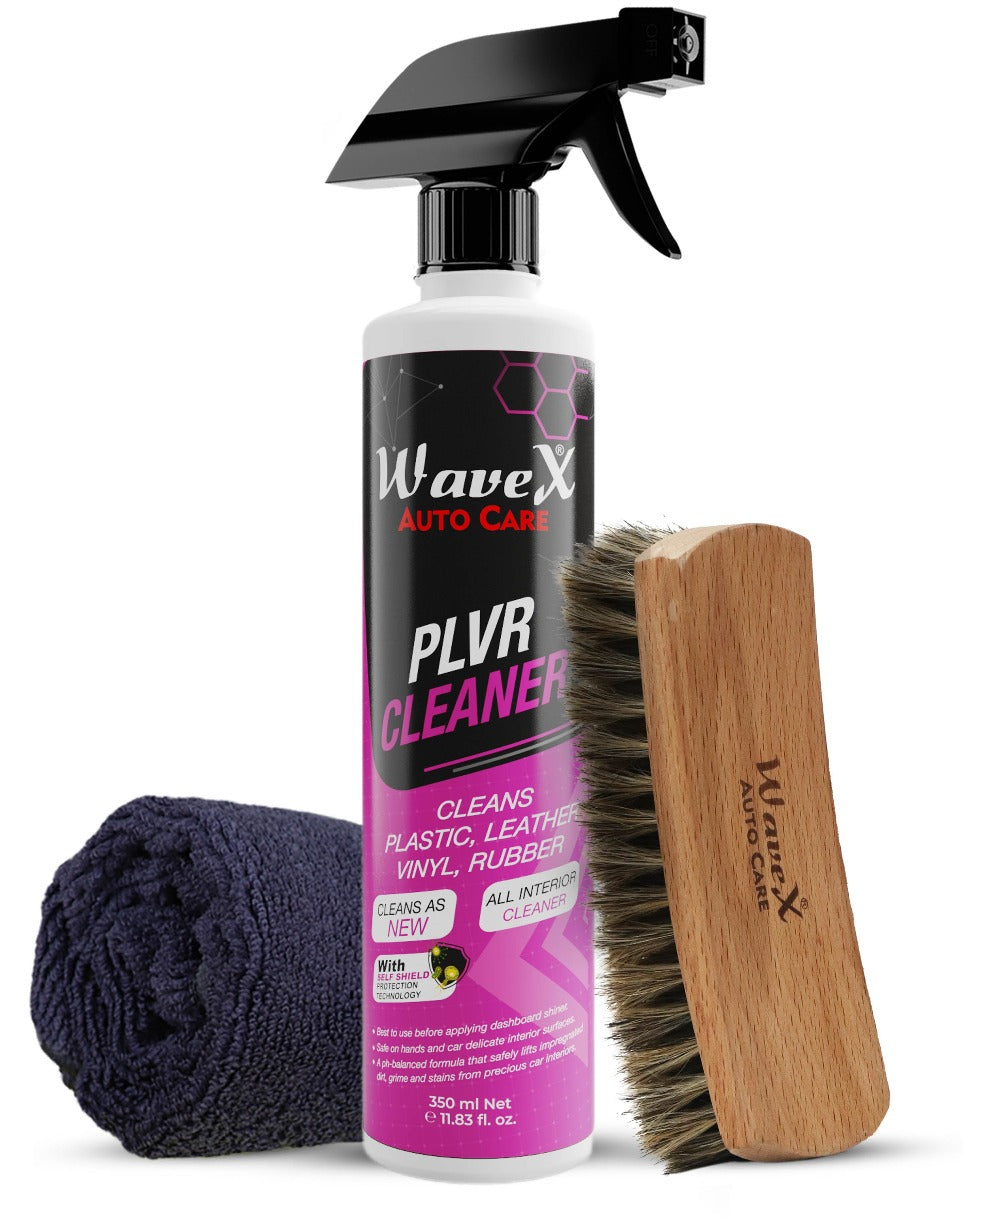 PLVR Plastic, Leather, Vinyl, Rubber Cleaner 350ml + Premium Interior Cleaning Brush + Microfiber Cloth